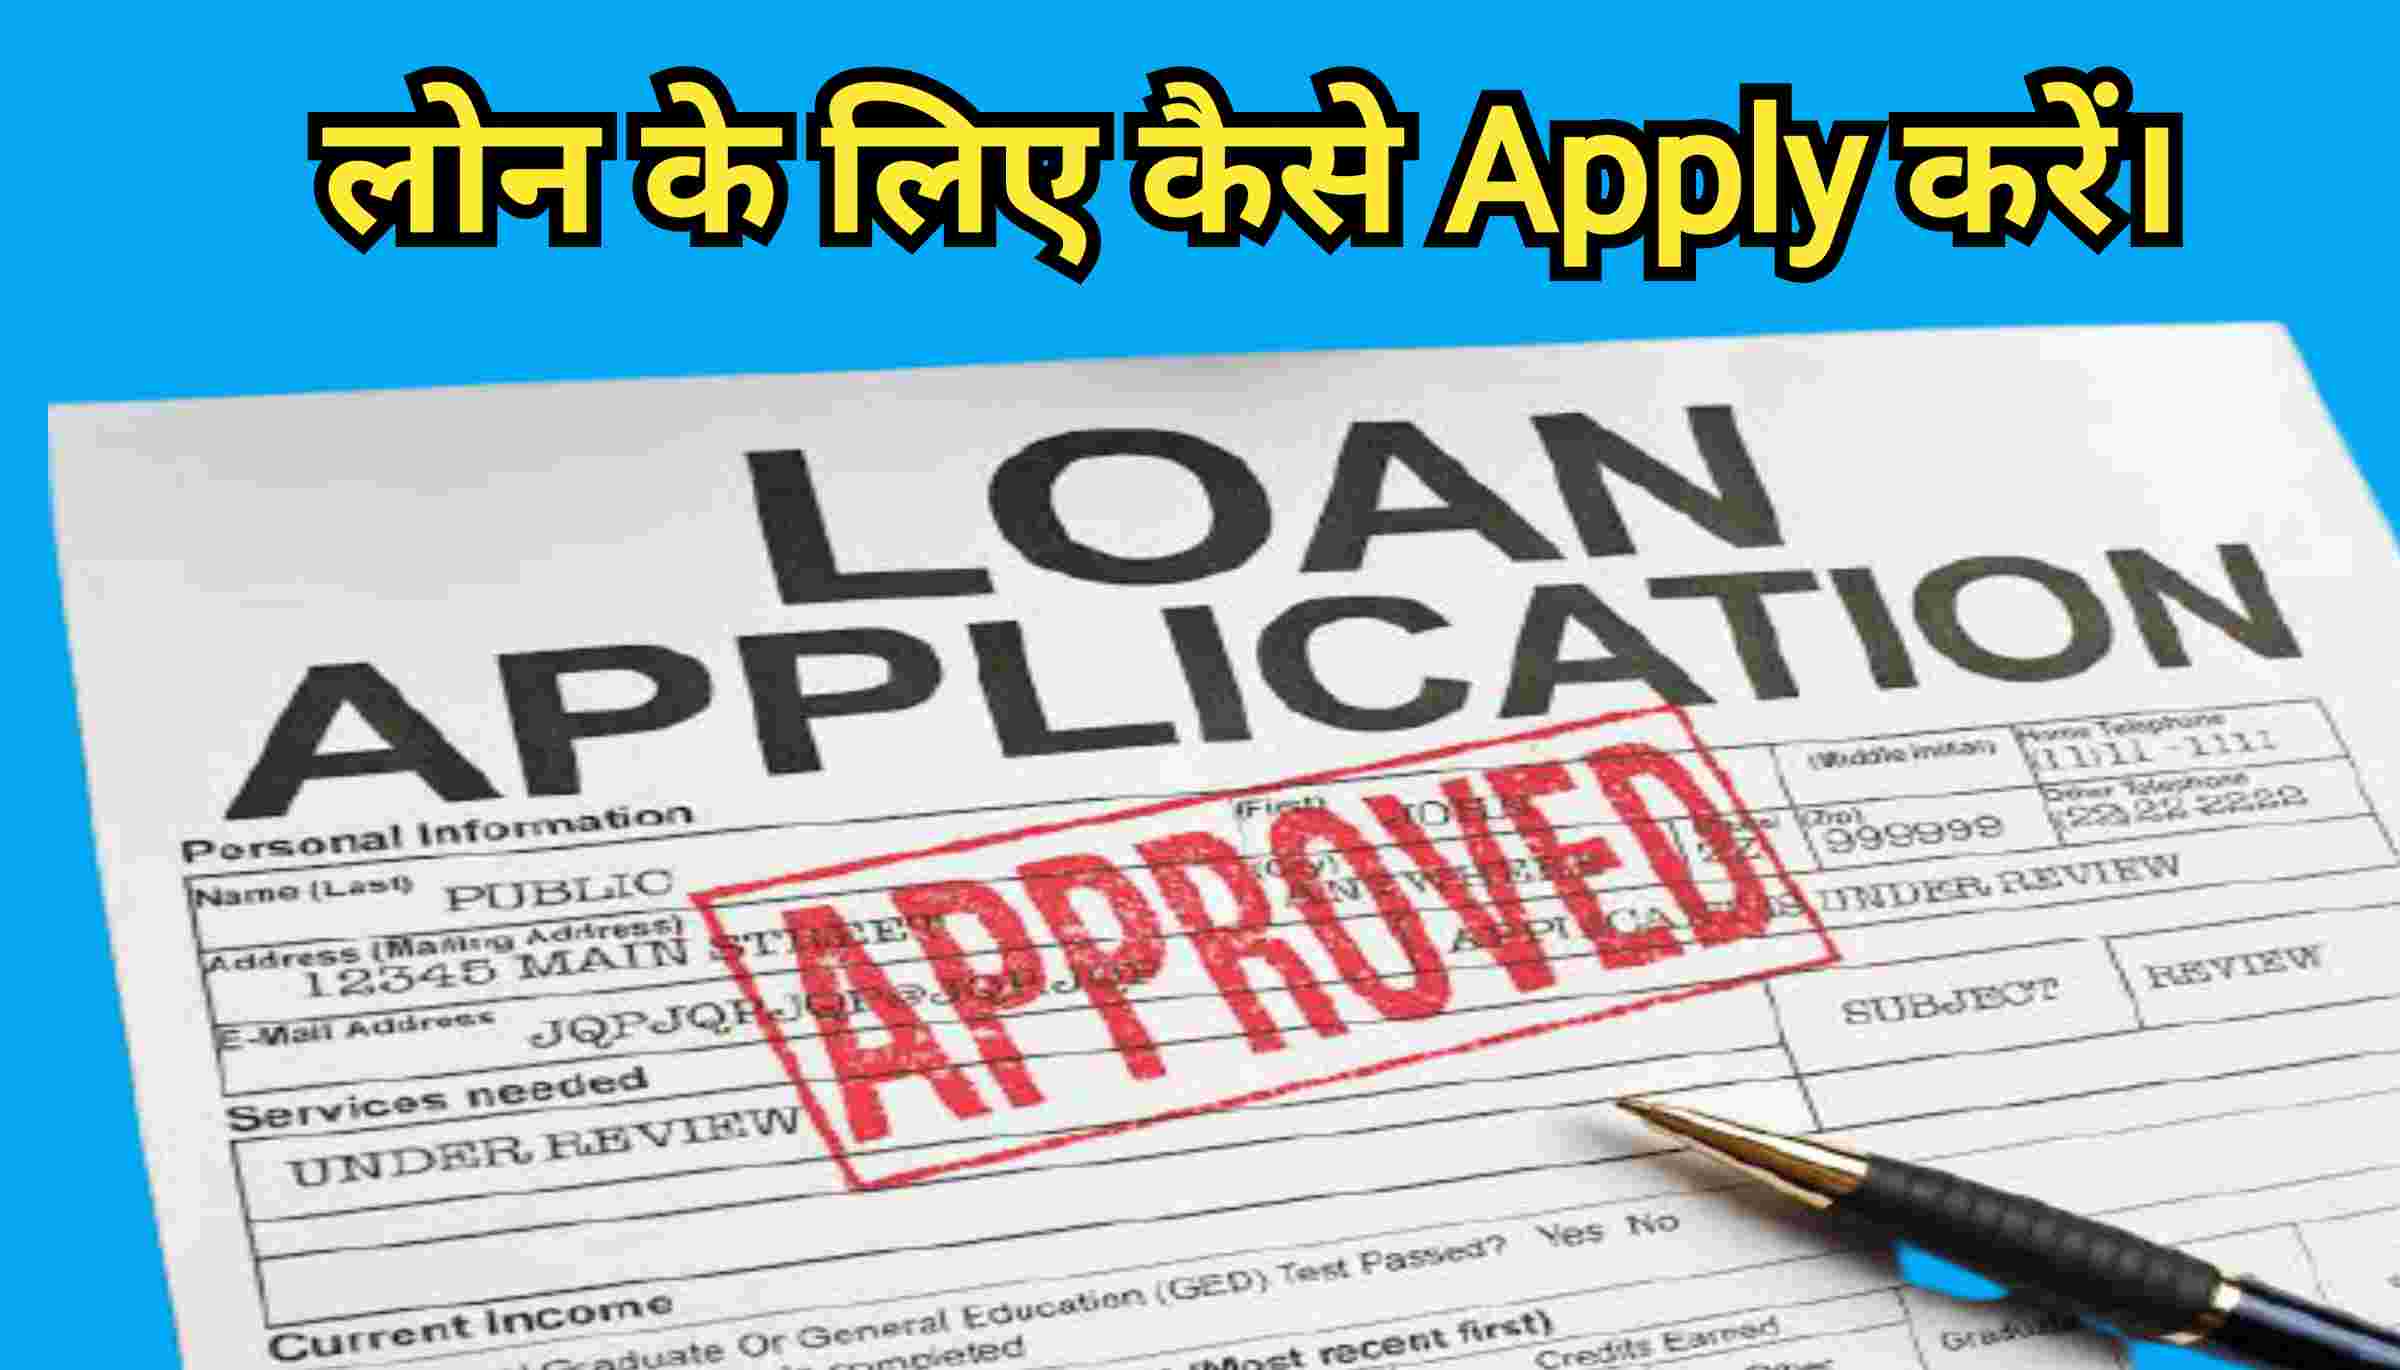 बैंक से लोन कैसे लें | How to apply for loan